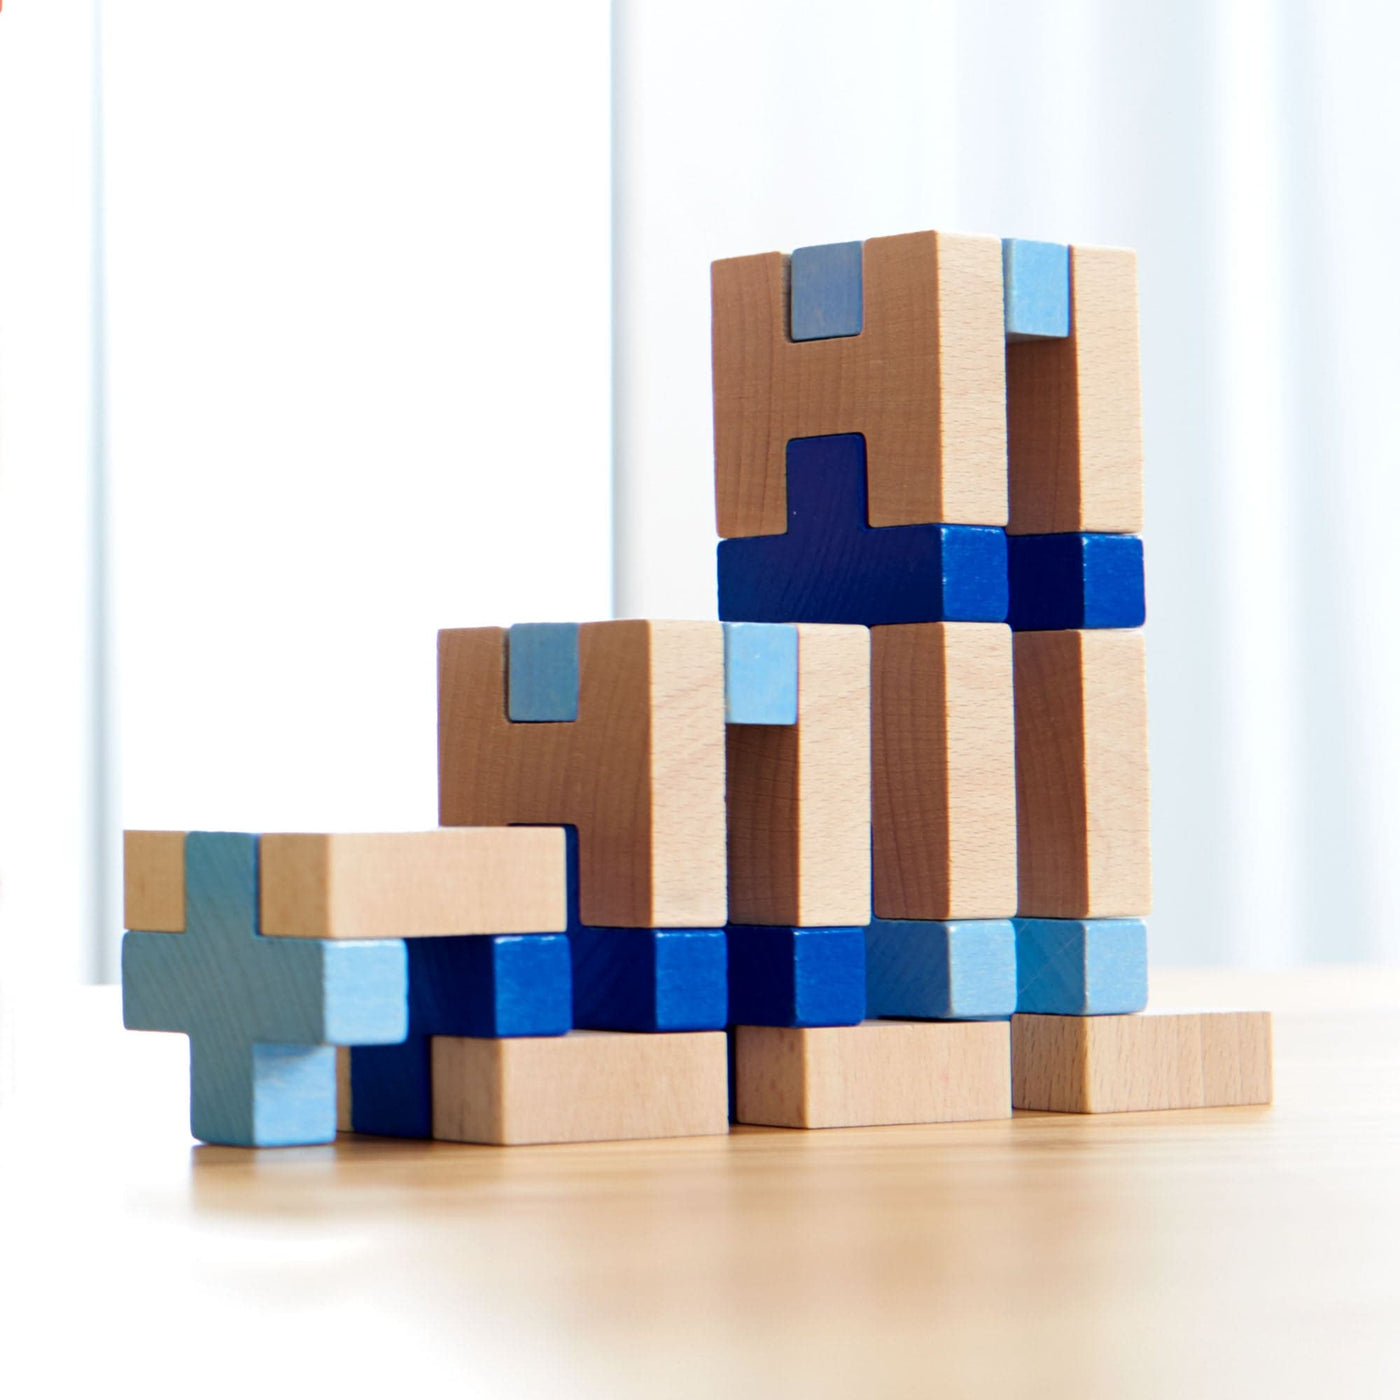 3D Viridis Wooden Blocks - HABA USA